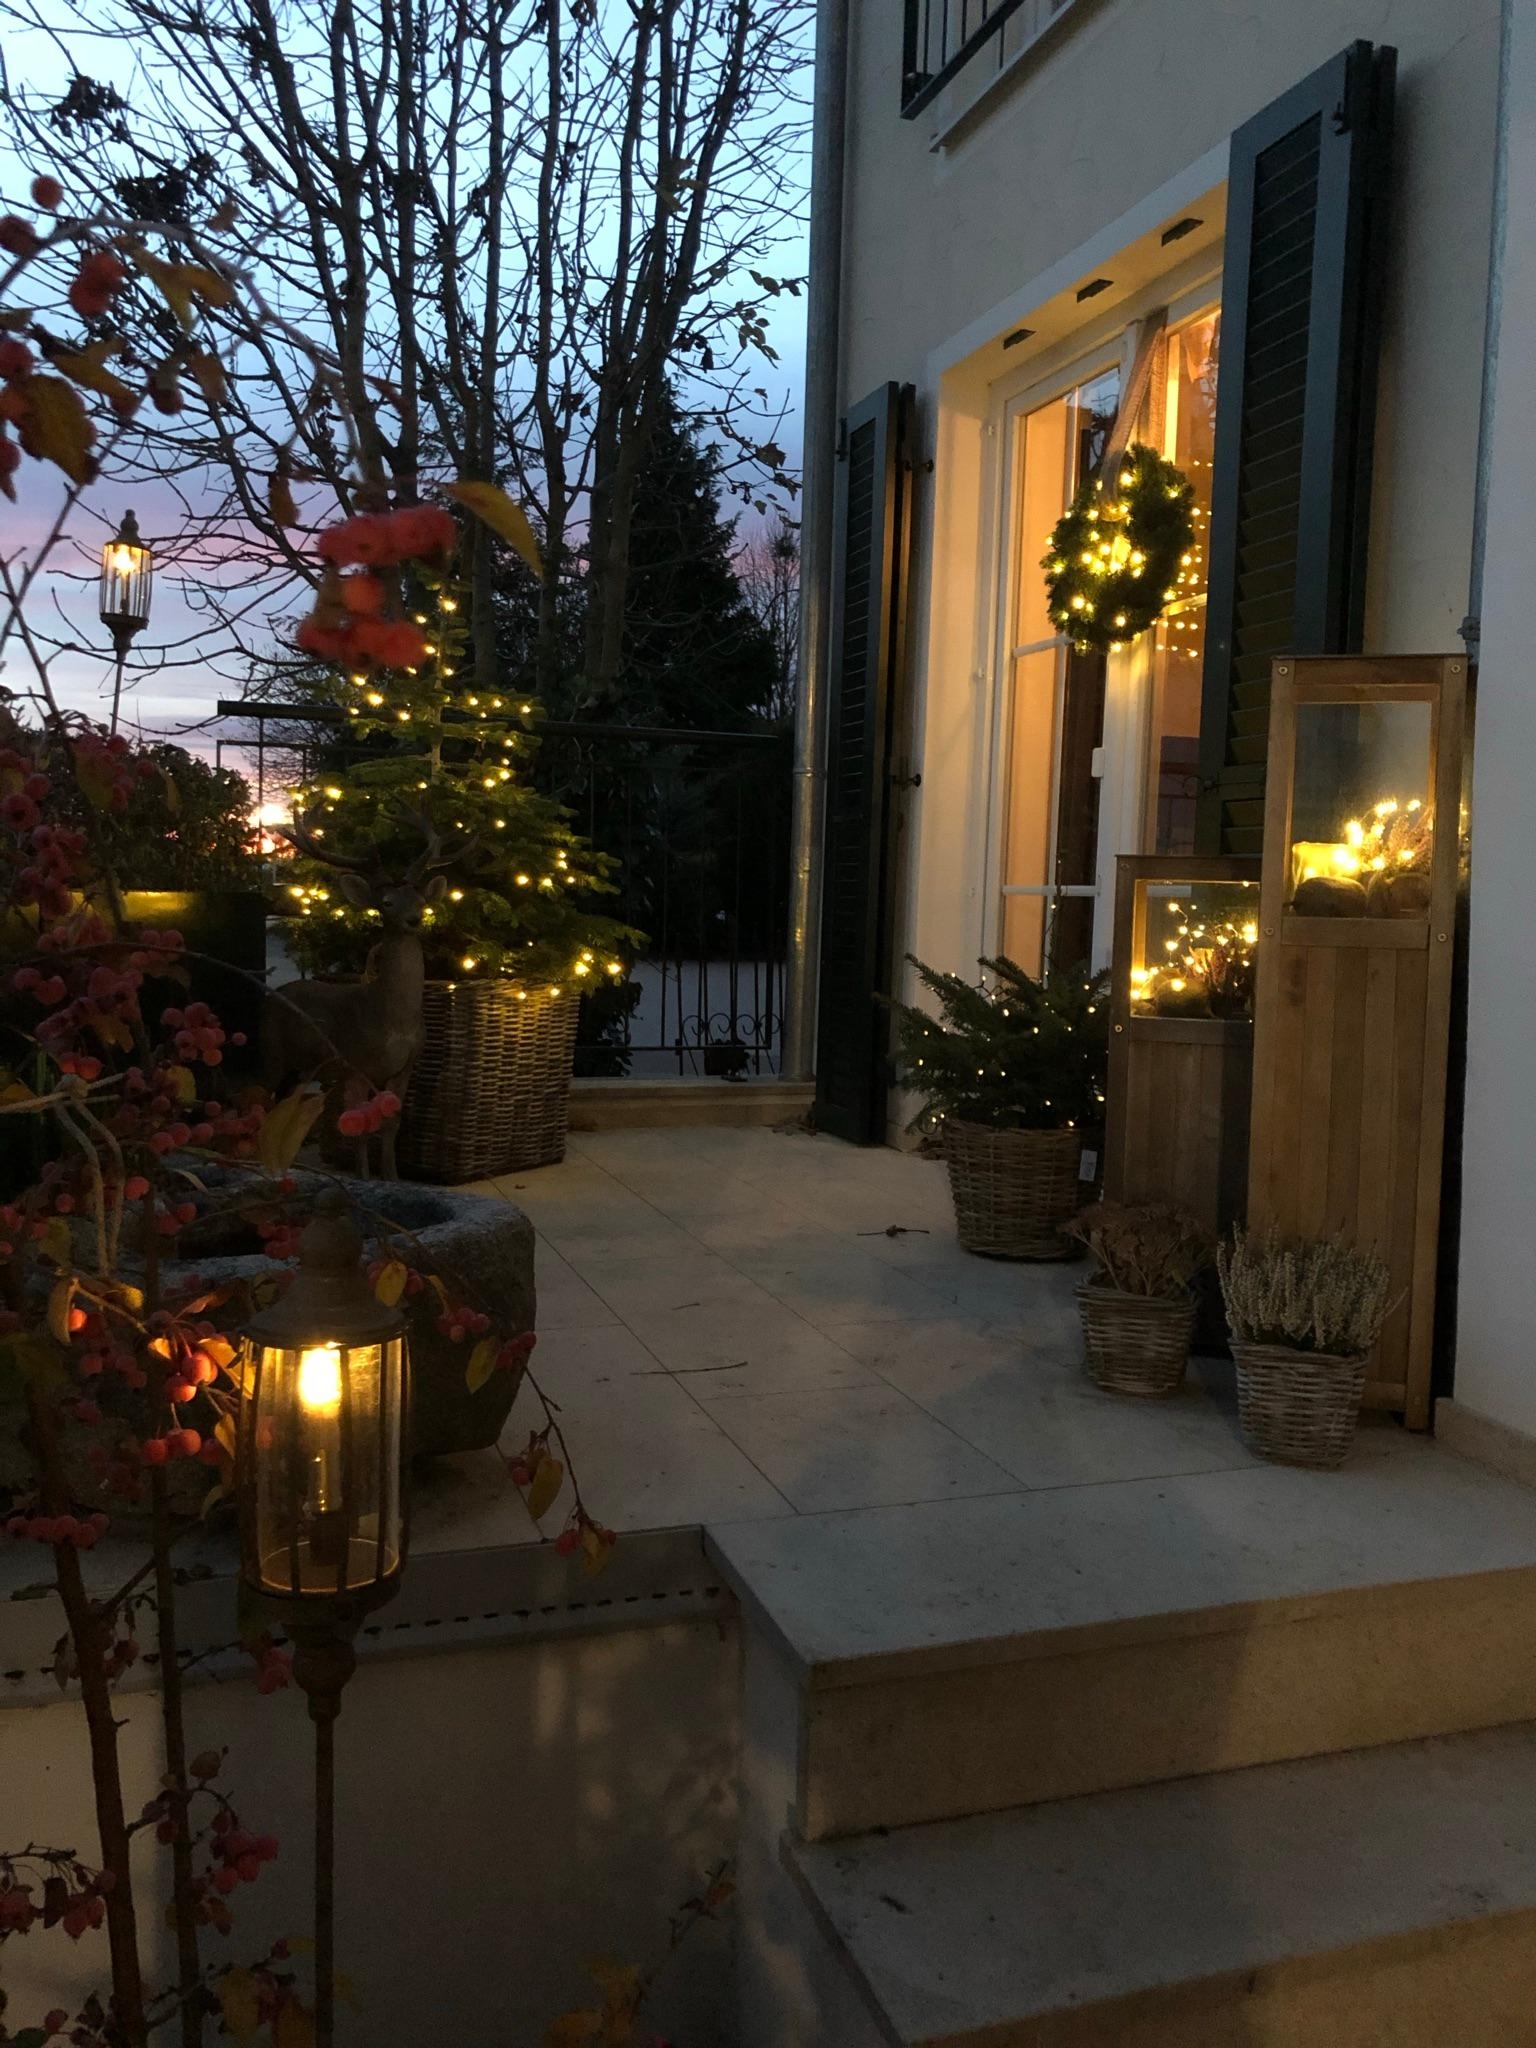 Lichterglanz im alten Häuschen! #lichterketten #weihnachten #weihnachtsdeko #garten #dekokration #terrasse #sterne 